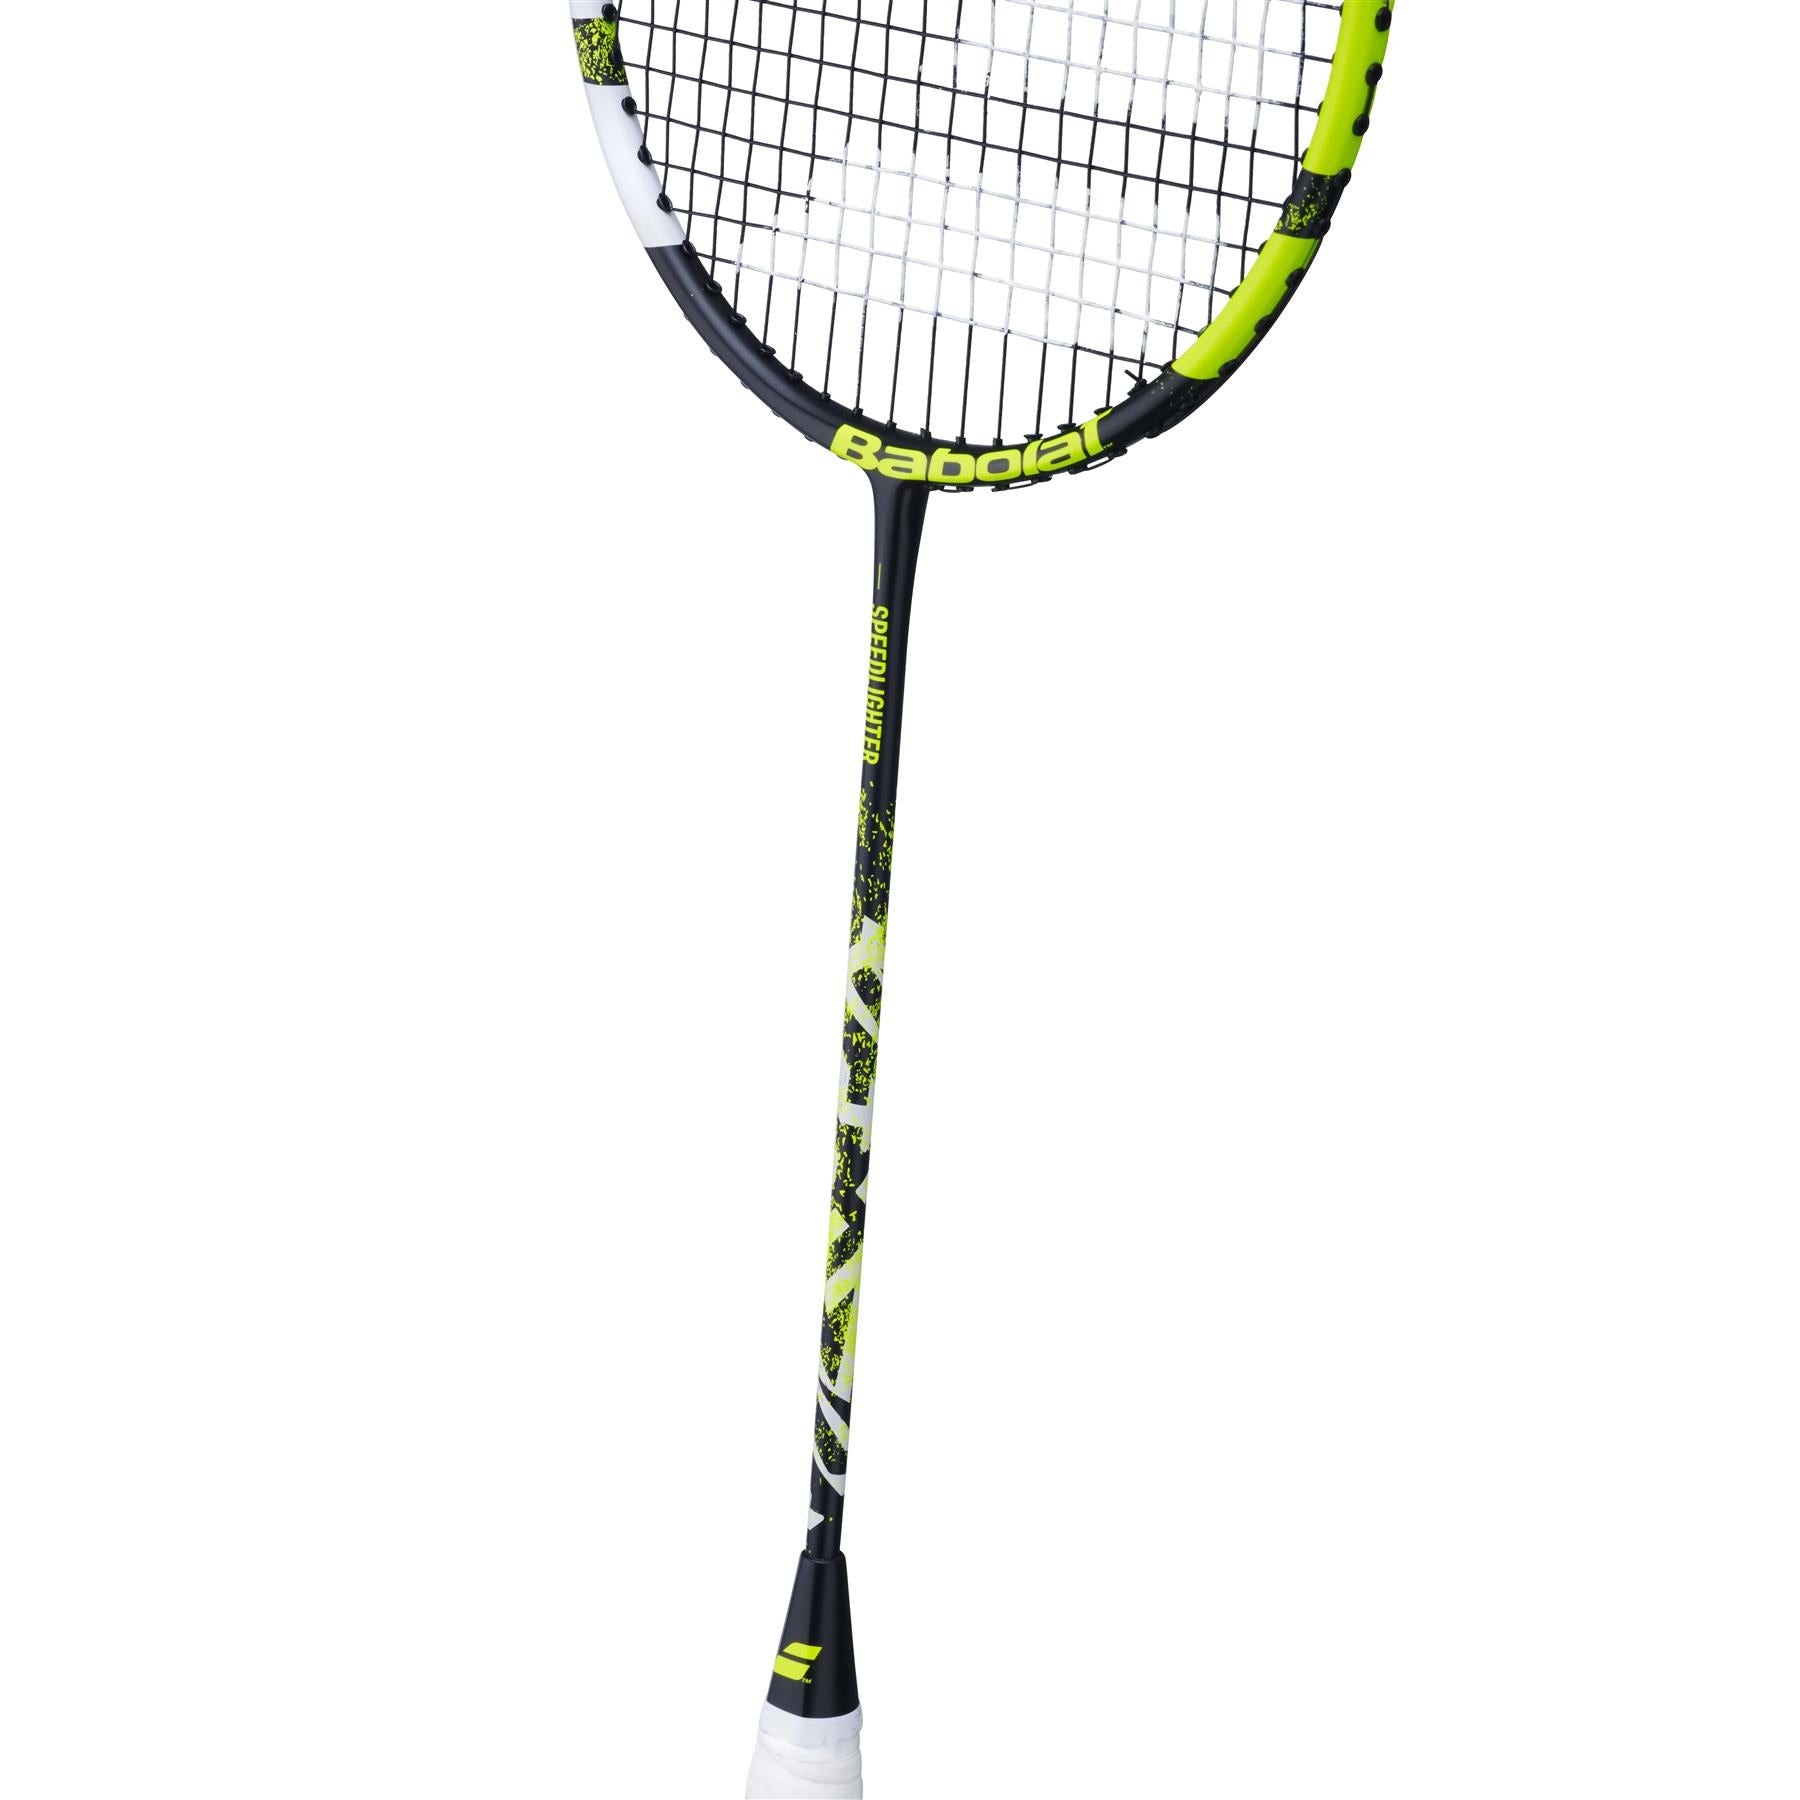 Babolat Speedlighter Junior Badminton Racket - Black / Green - Shaft